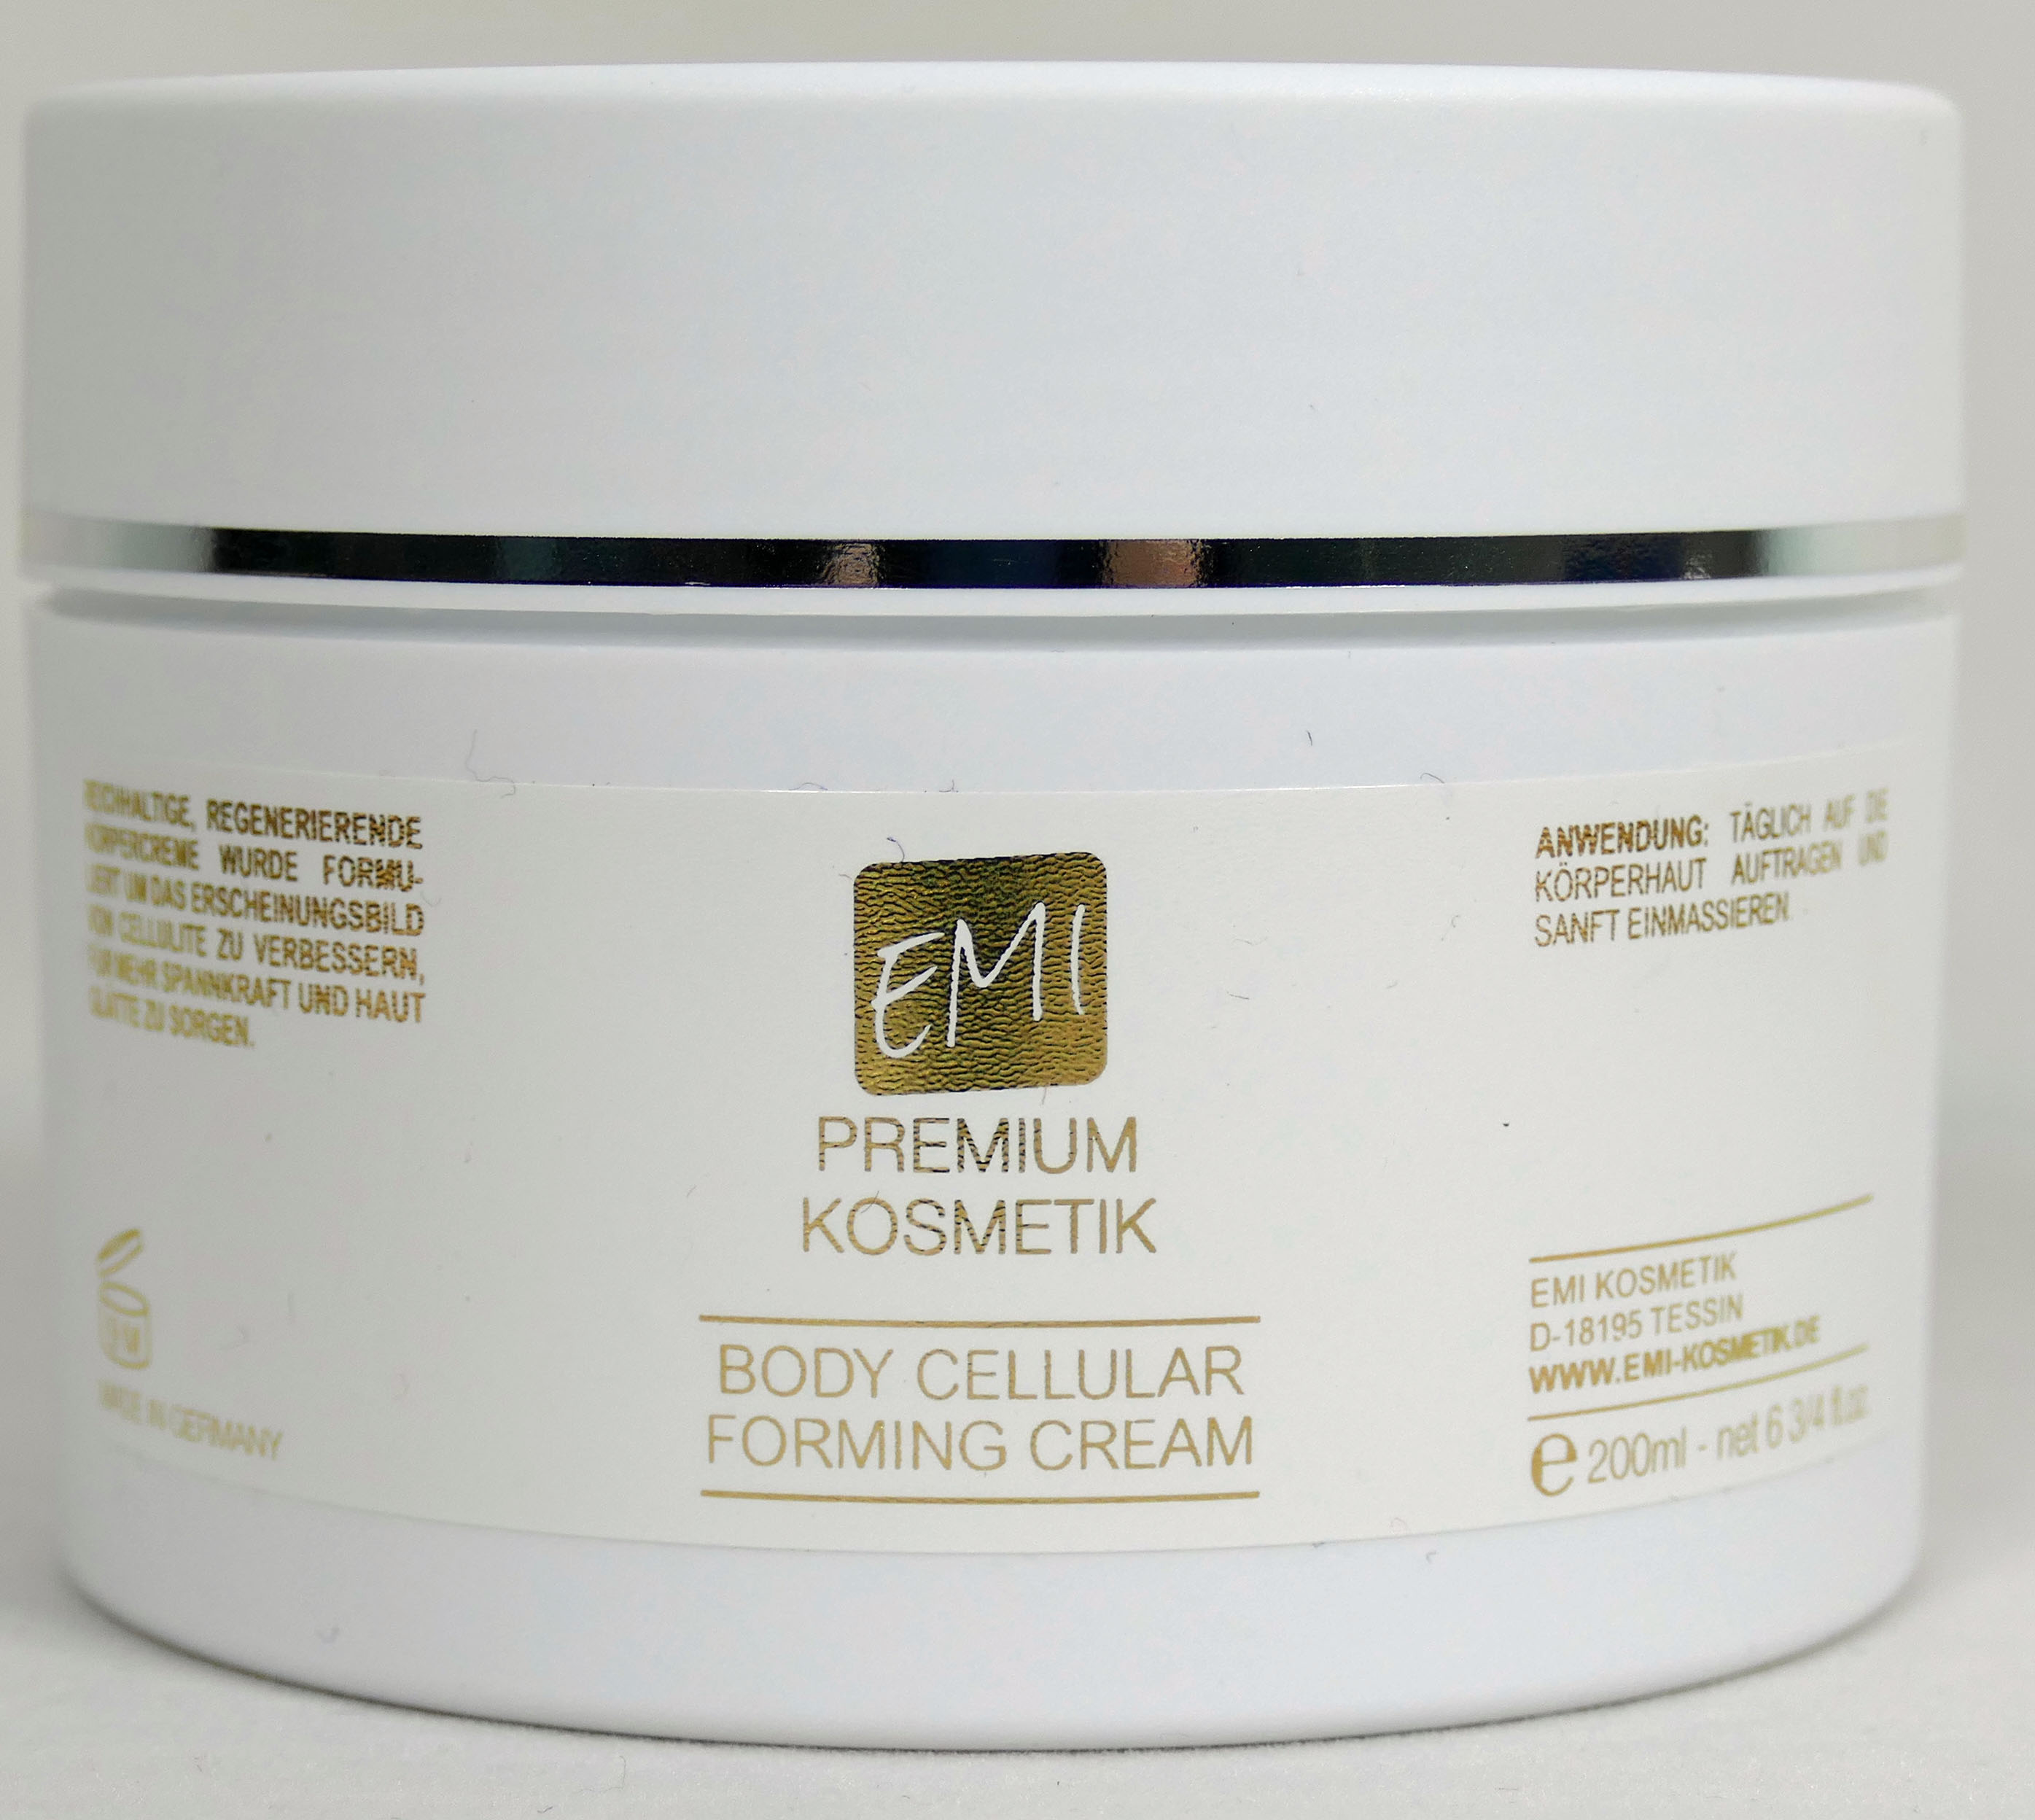 EMI Body Cellular Forming Cream